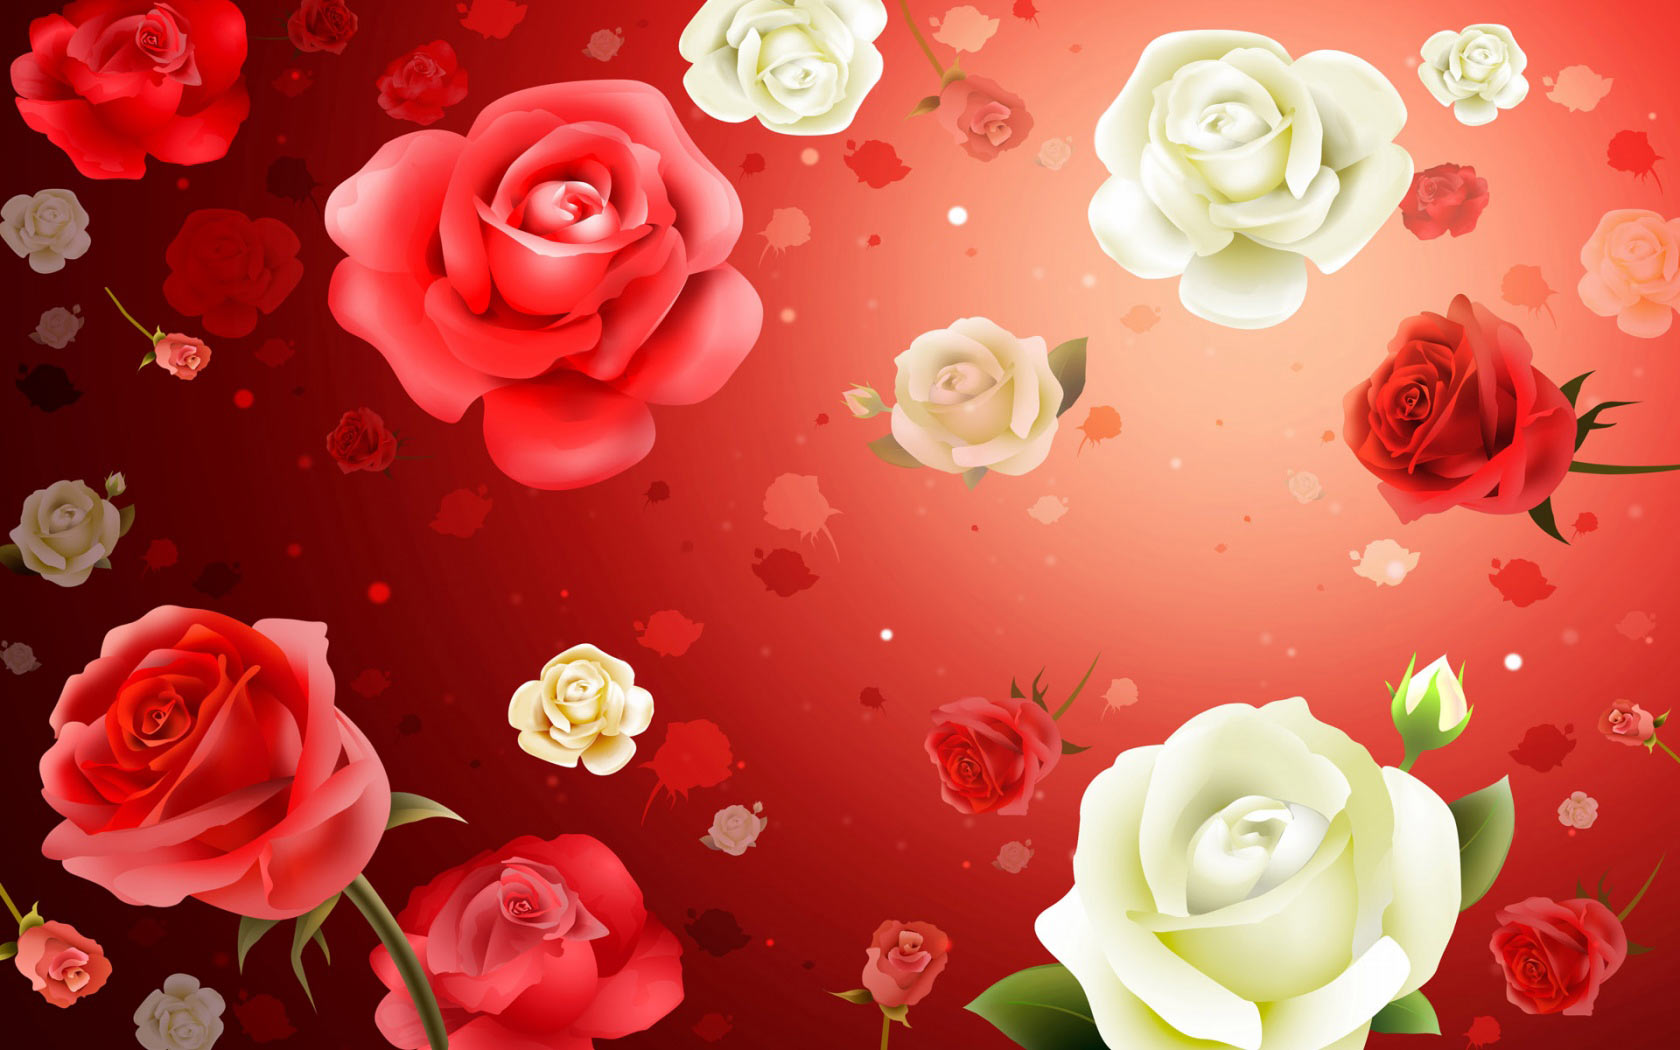 Rose Flower Background Design